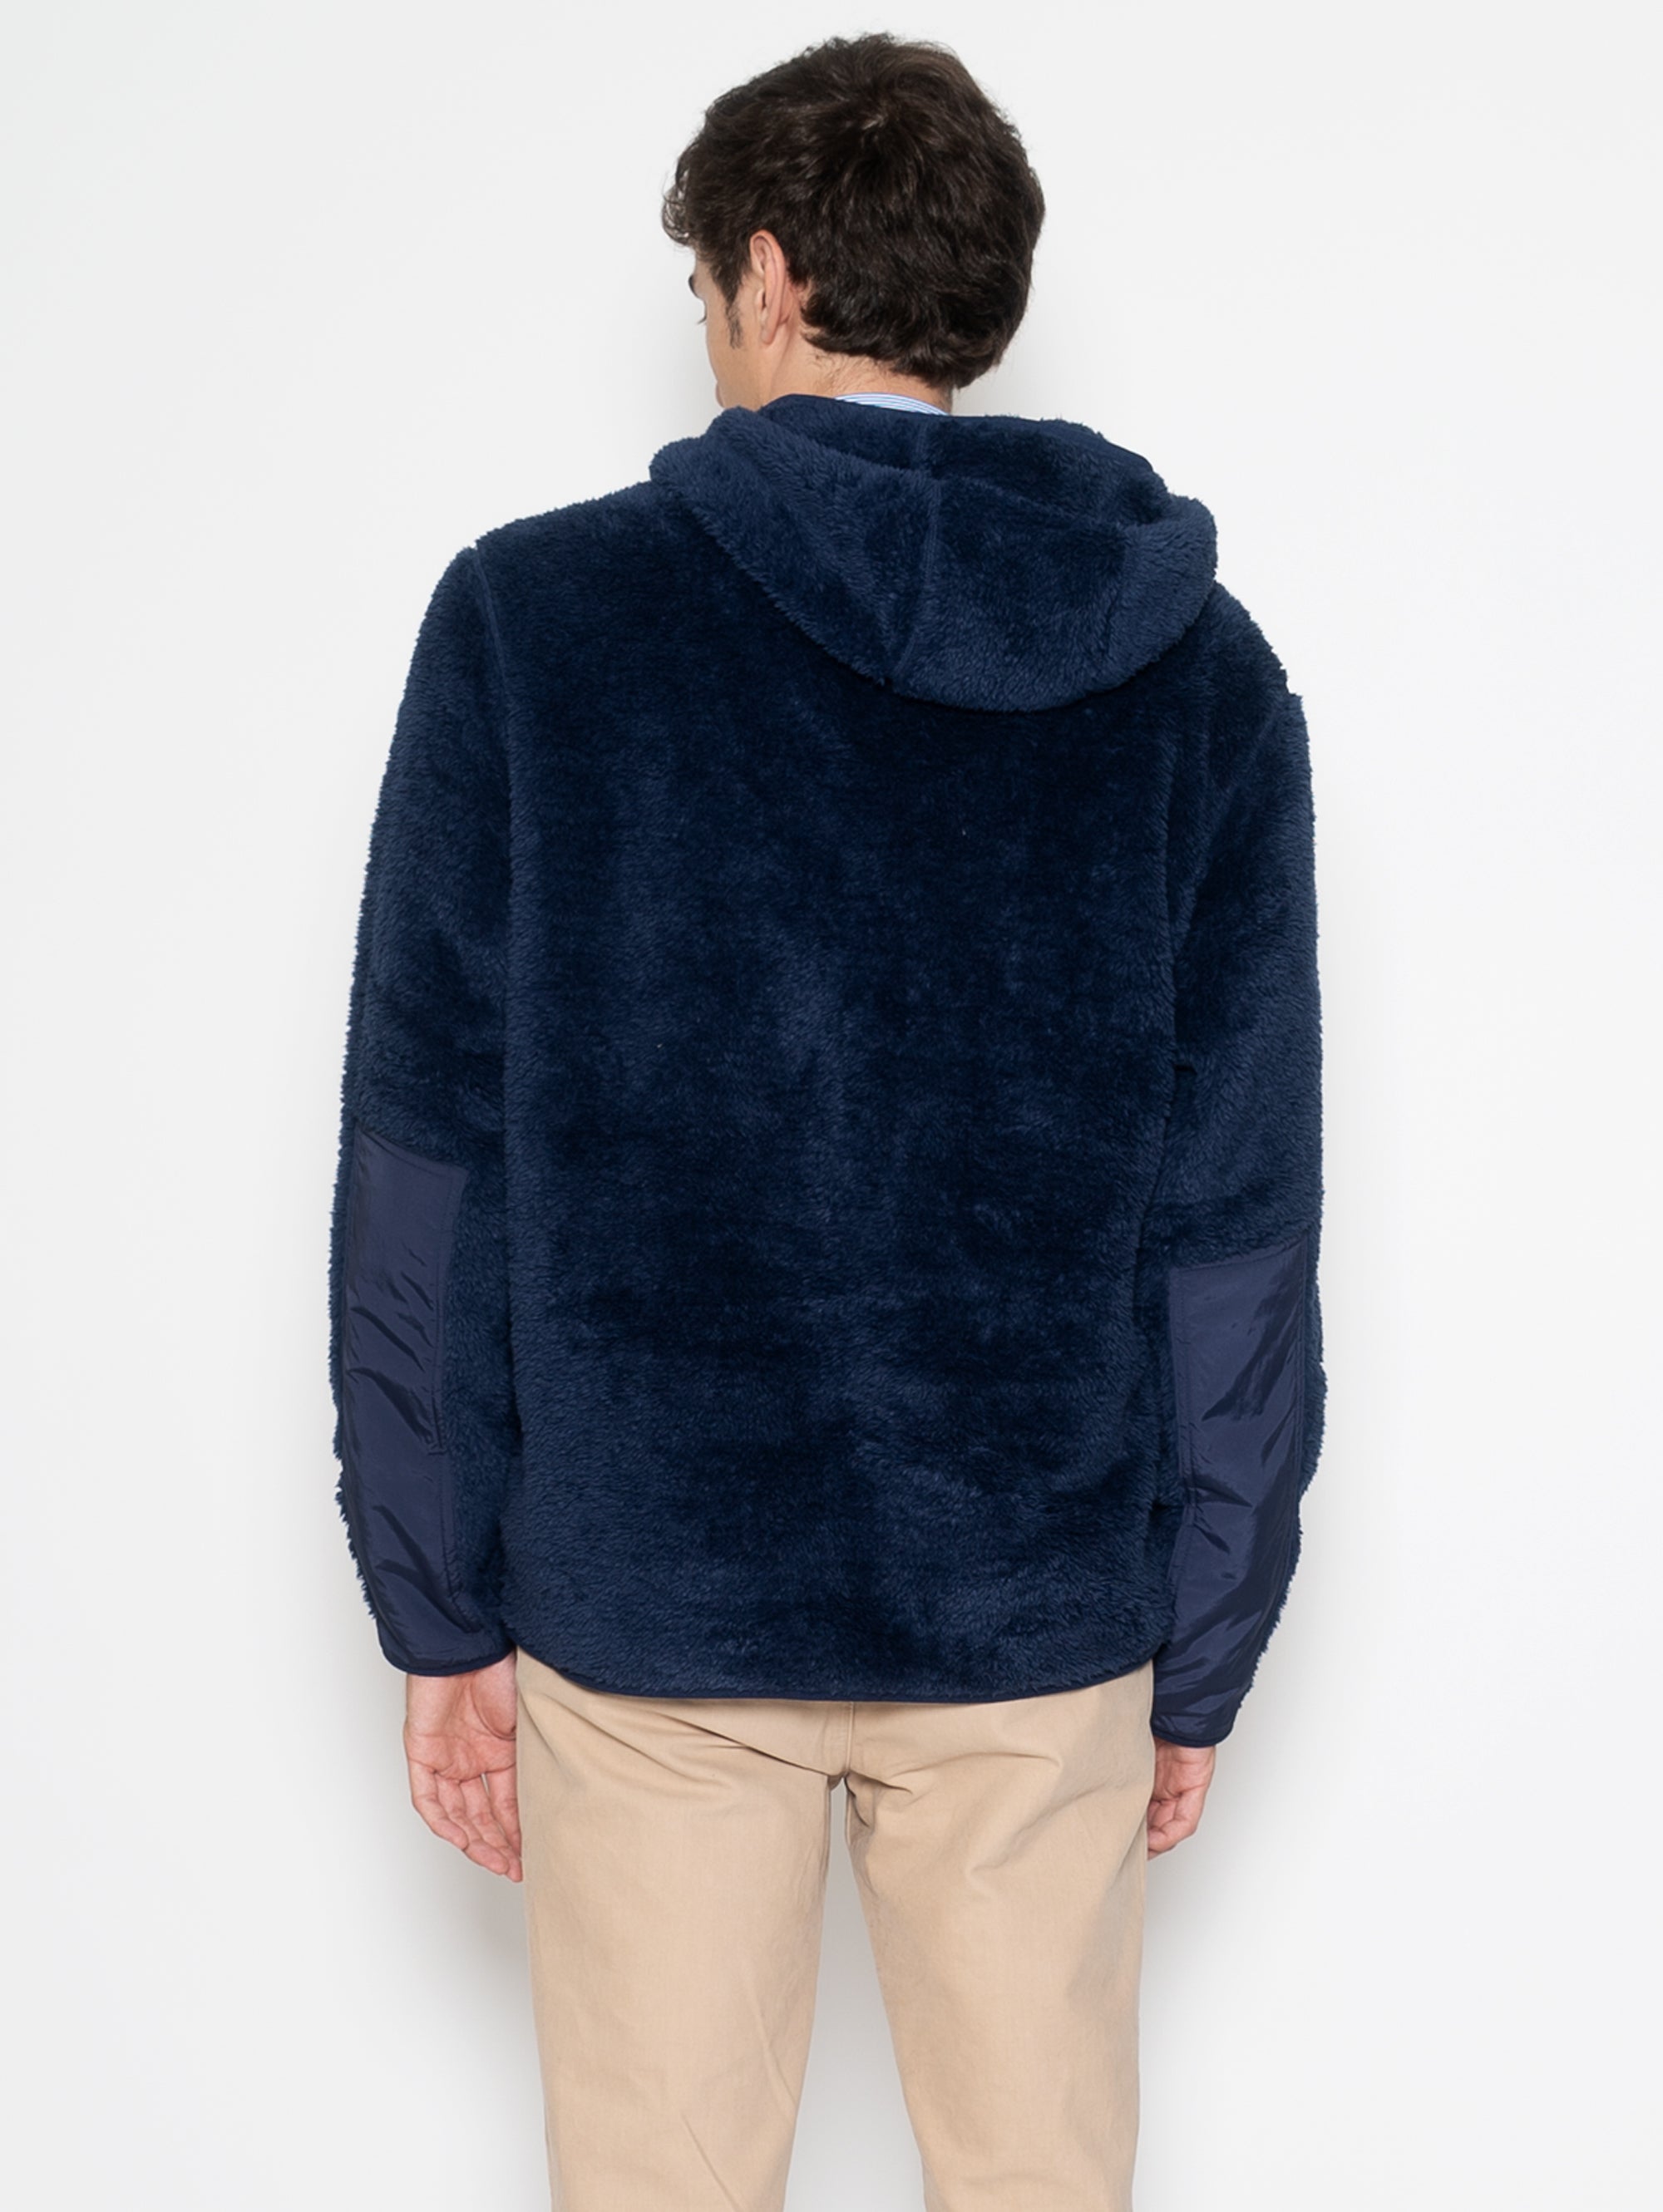 Langfloriger Fleece-Hoodie in Marineblau